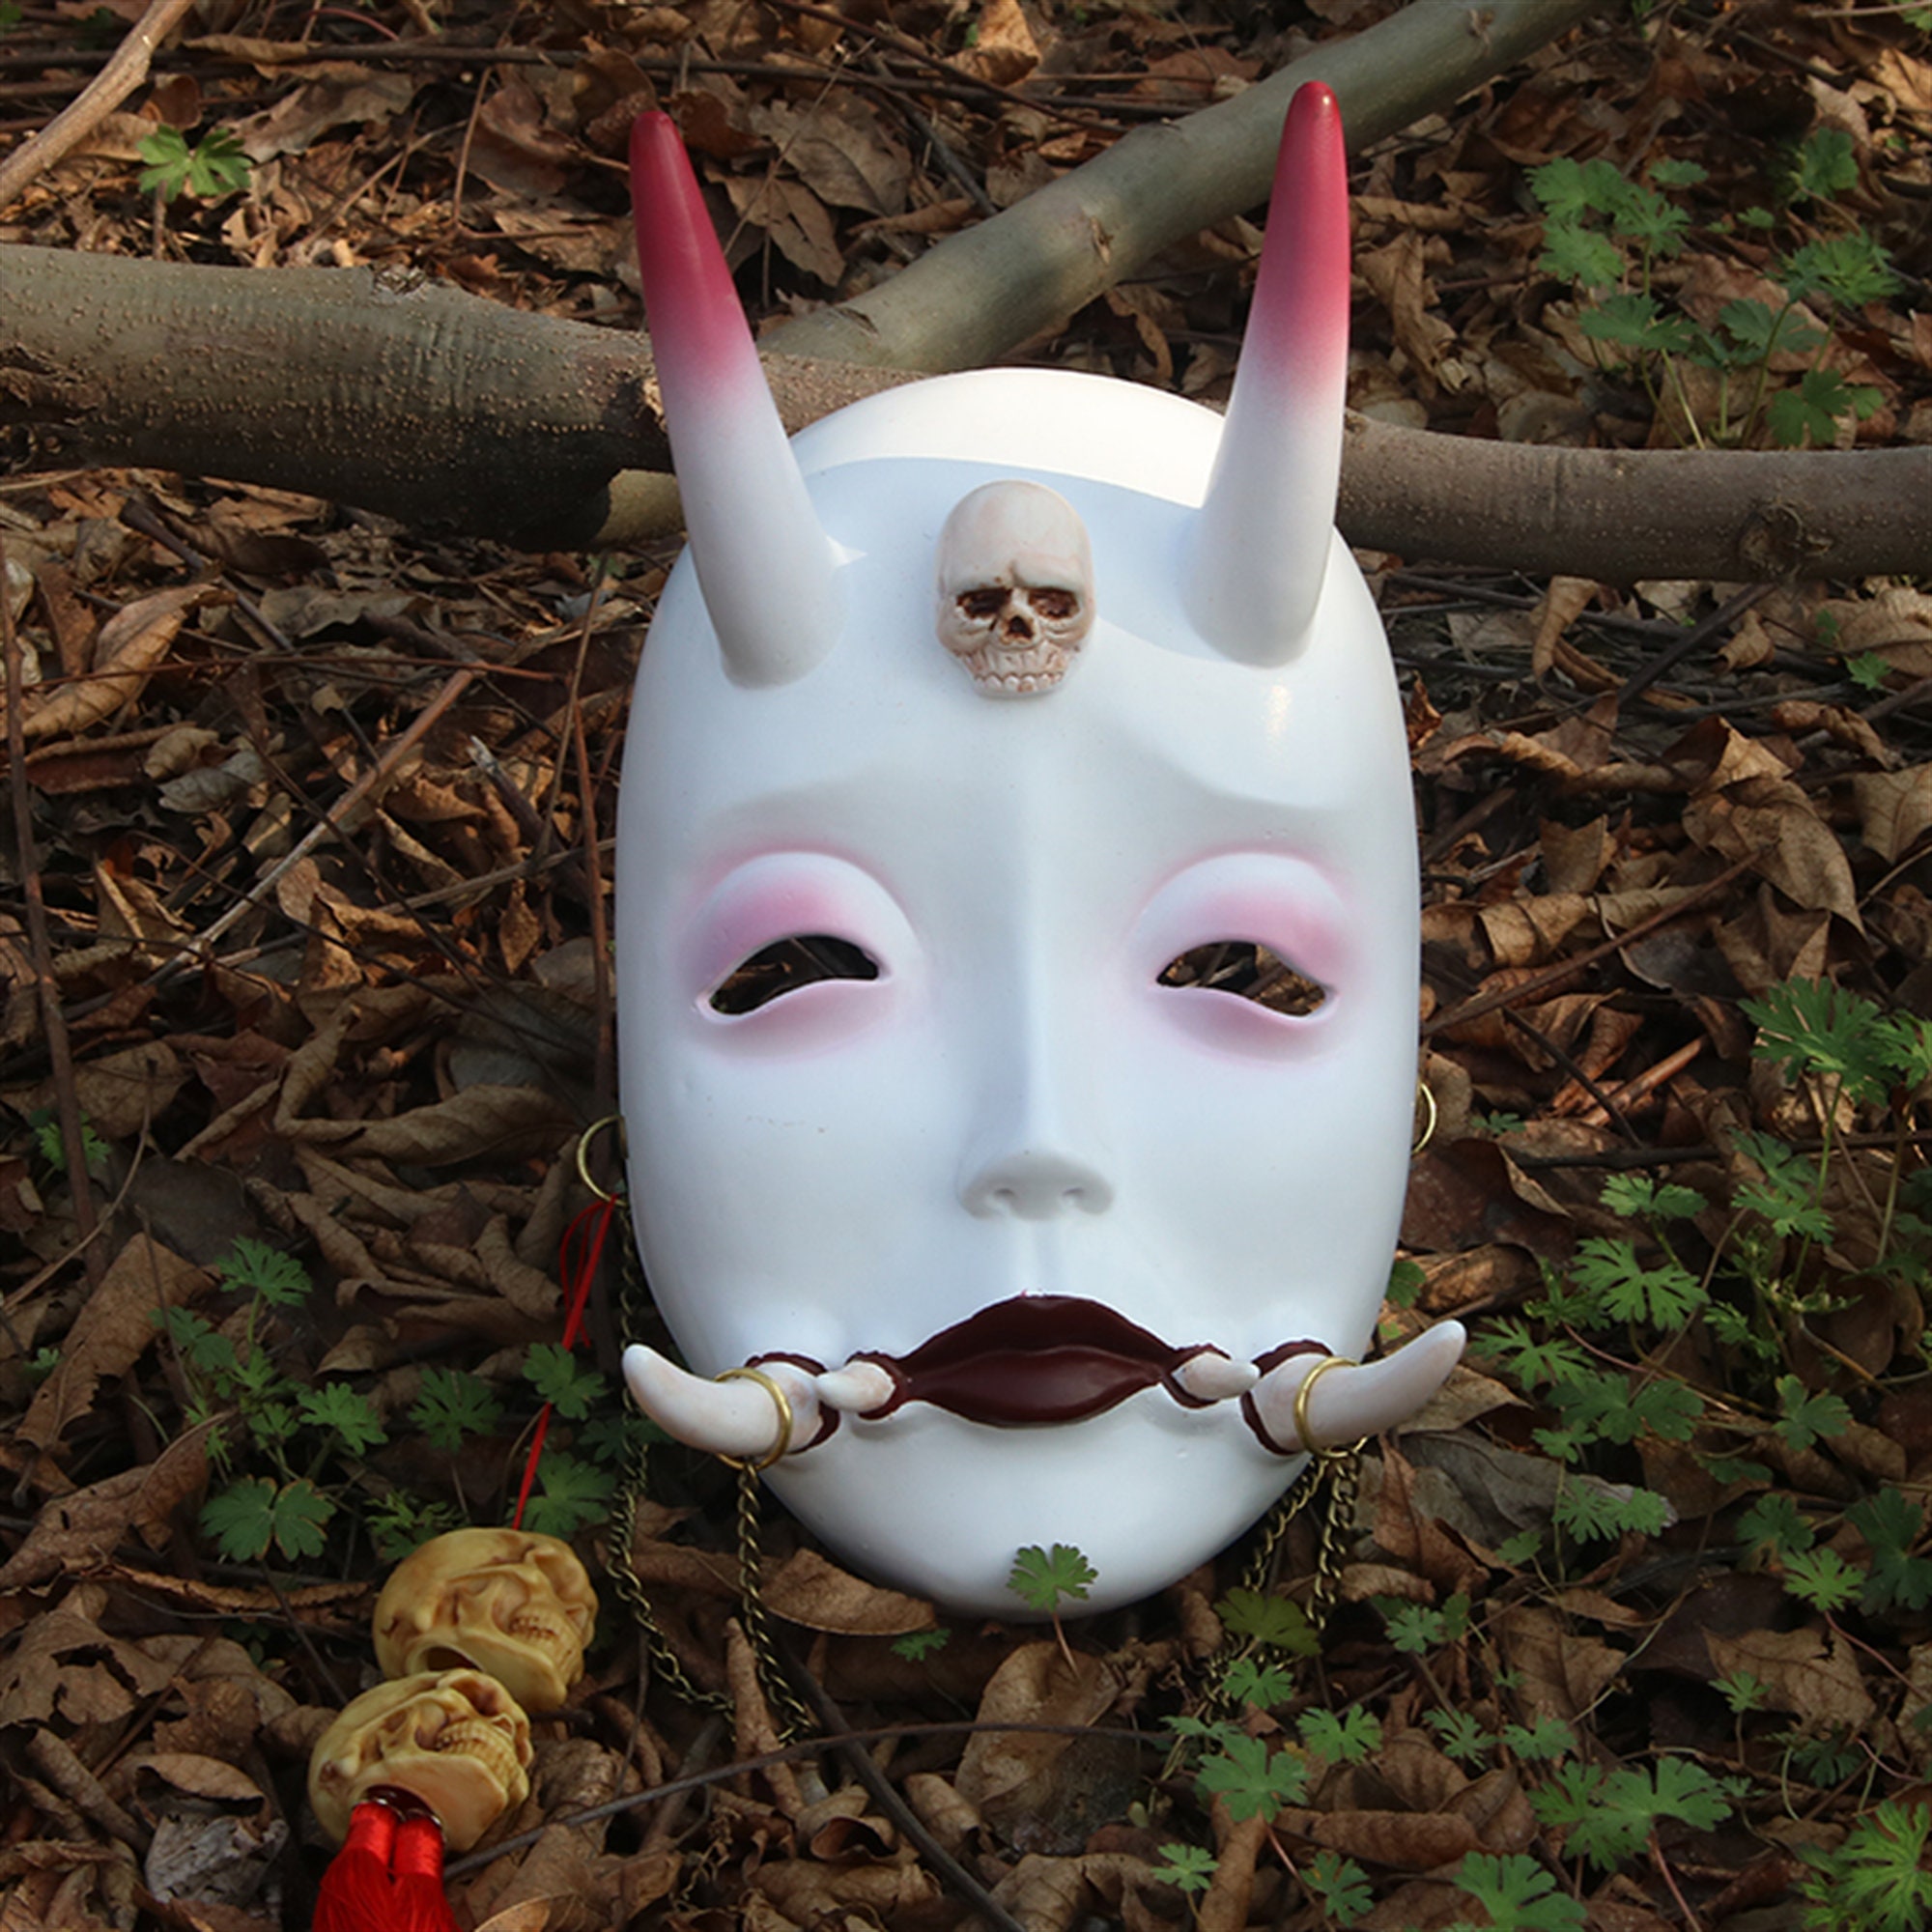 Kitsune Mask Resin Japanese Fox Classic Masks Made to Order white 